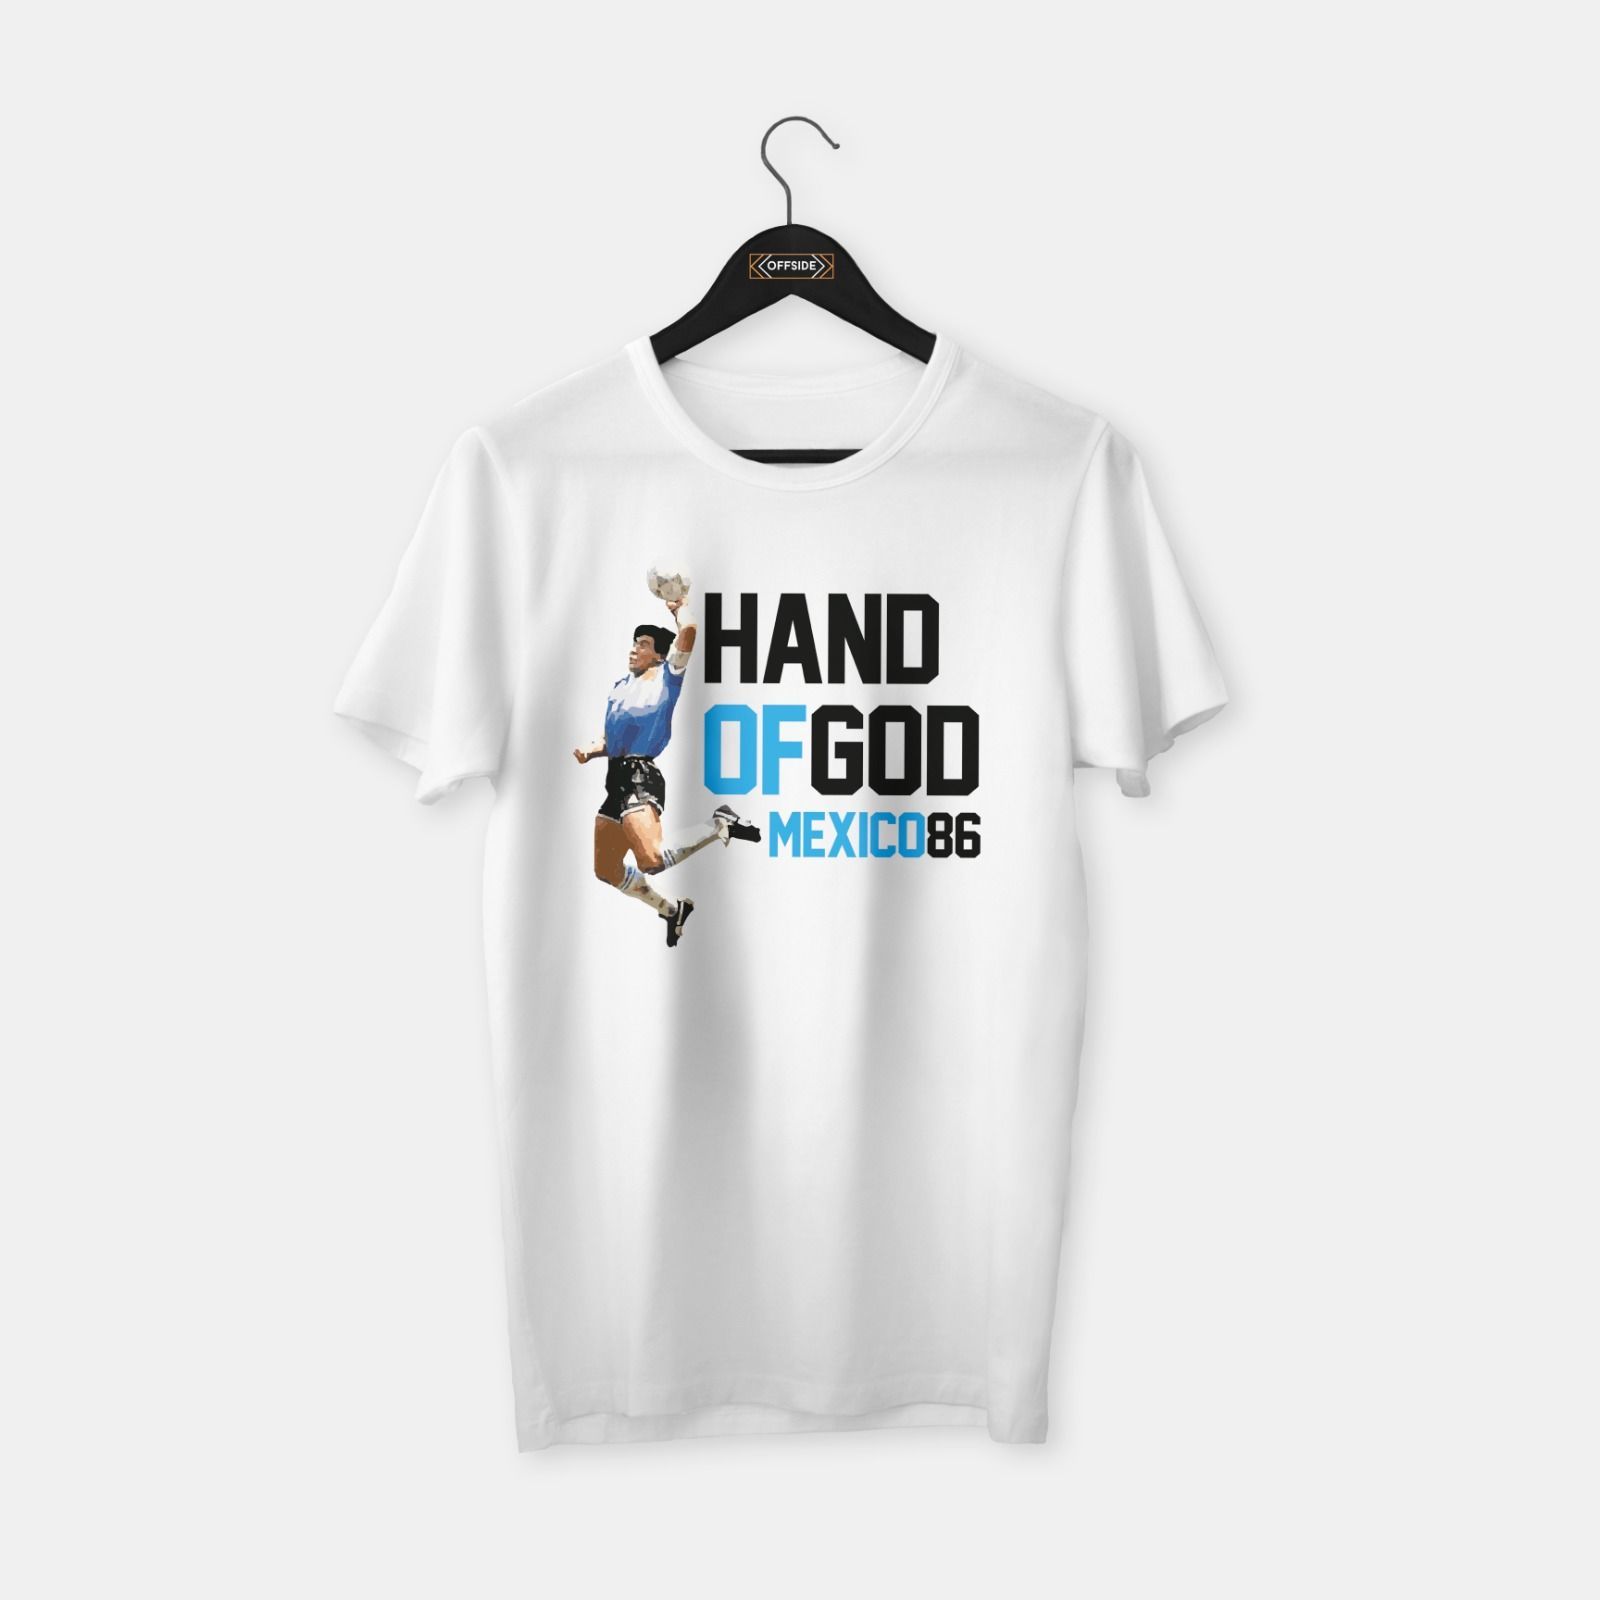 Maradona - Hand of God T-shirt